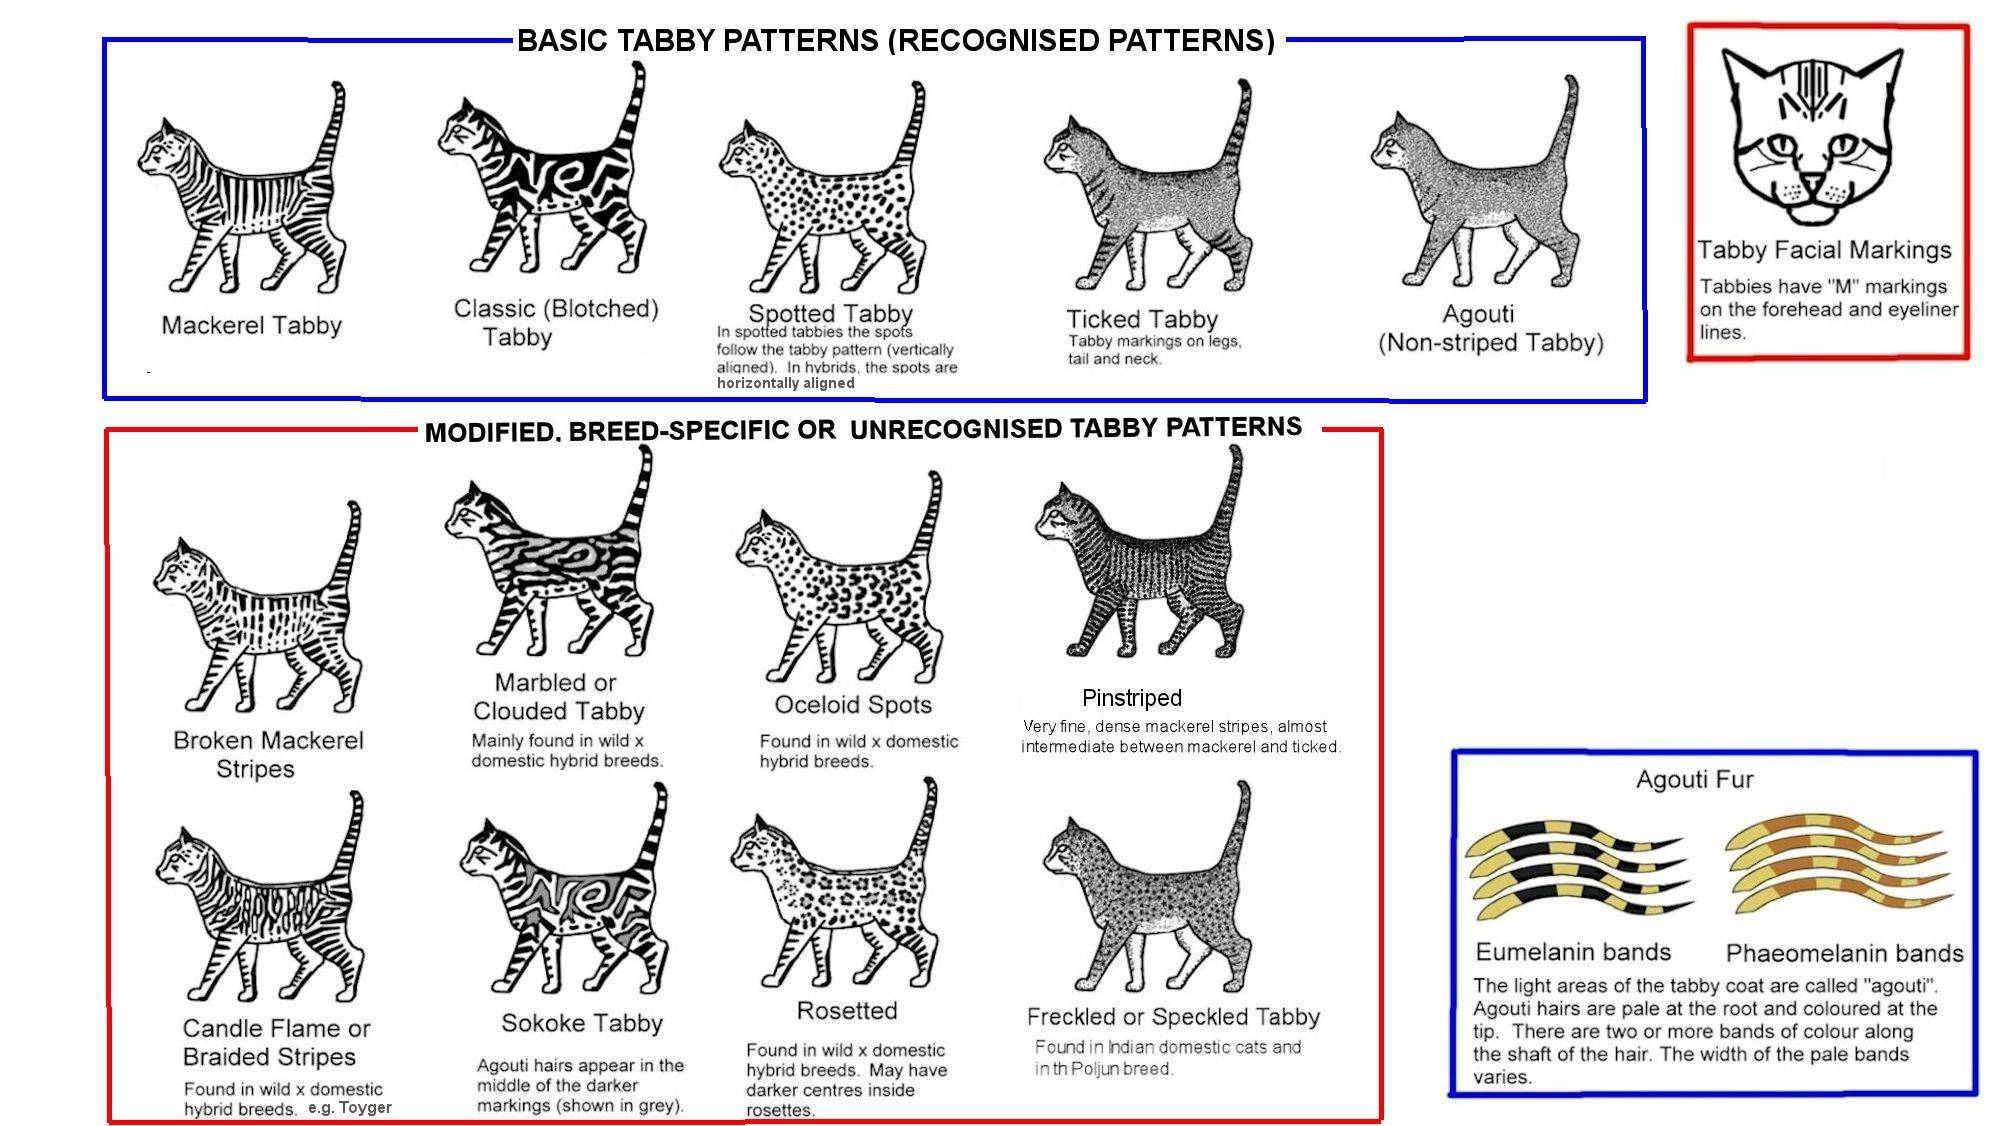 Окрасы кошек: описание с фото, история, генетика и кодировки